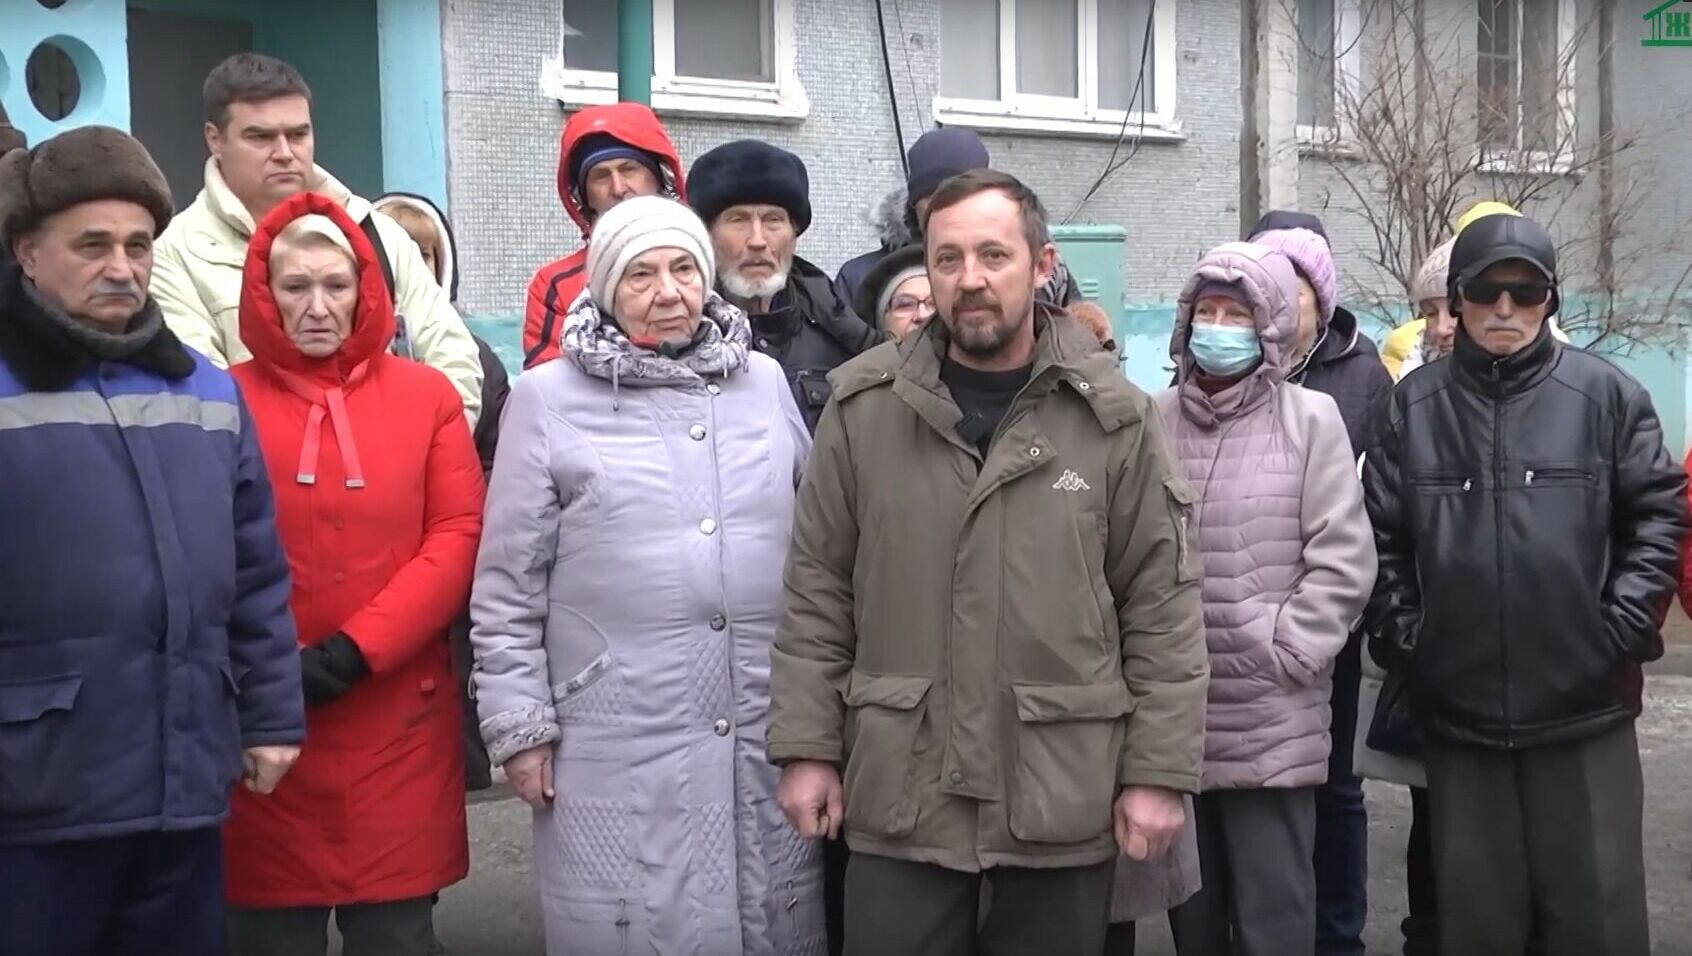 Наши хаты с краю: жители поселка на юге Волгограда жалуются на качество жизни